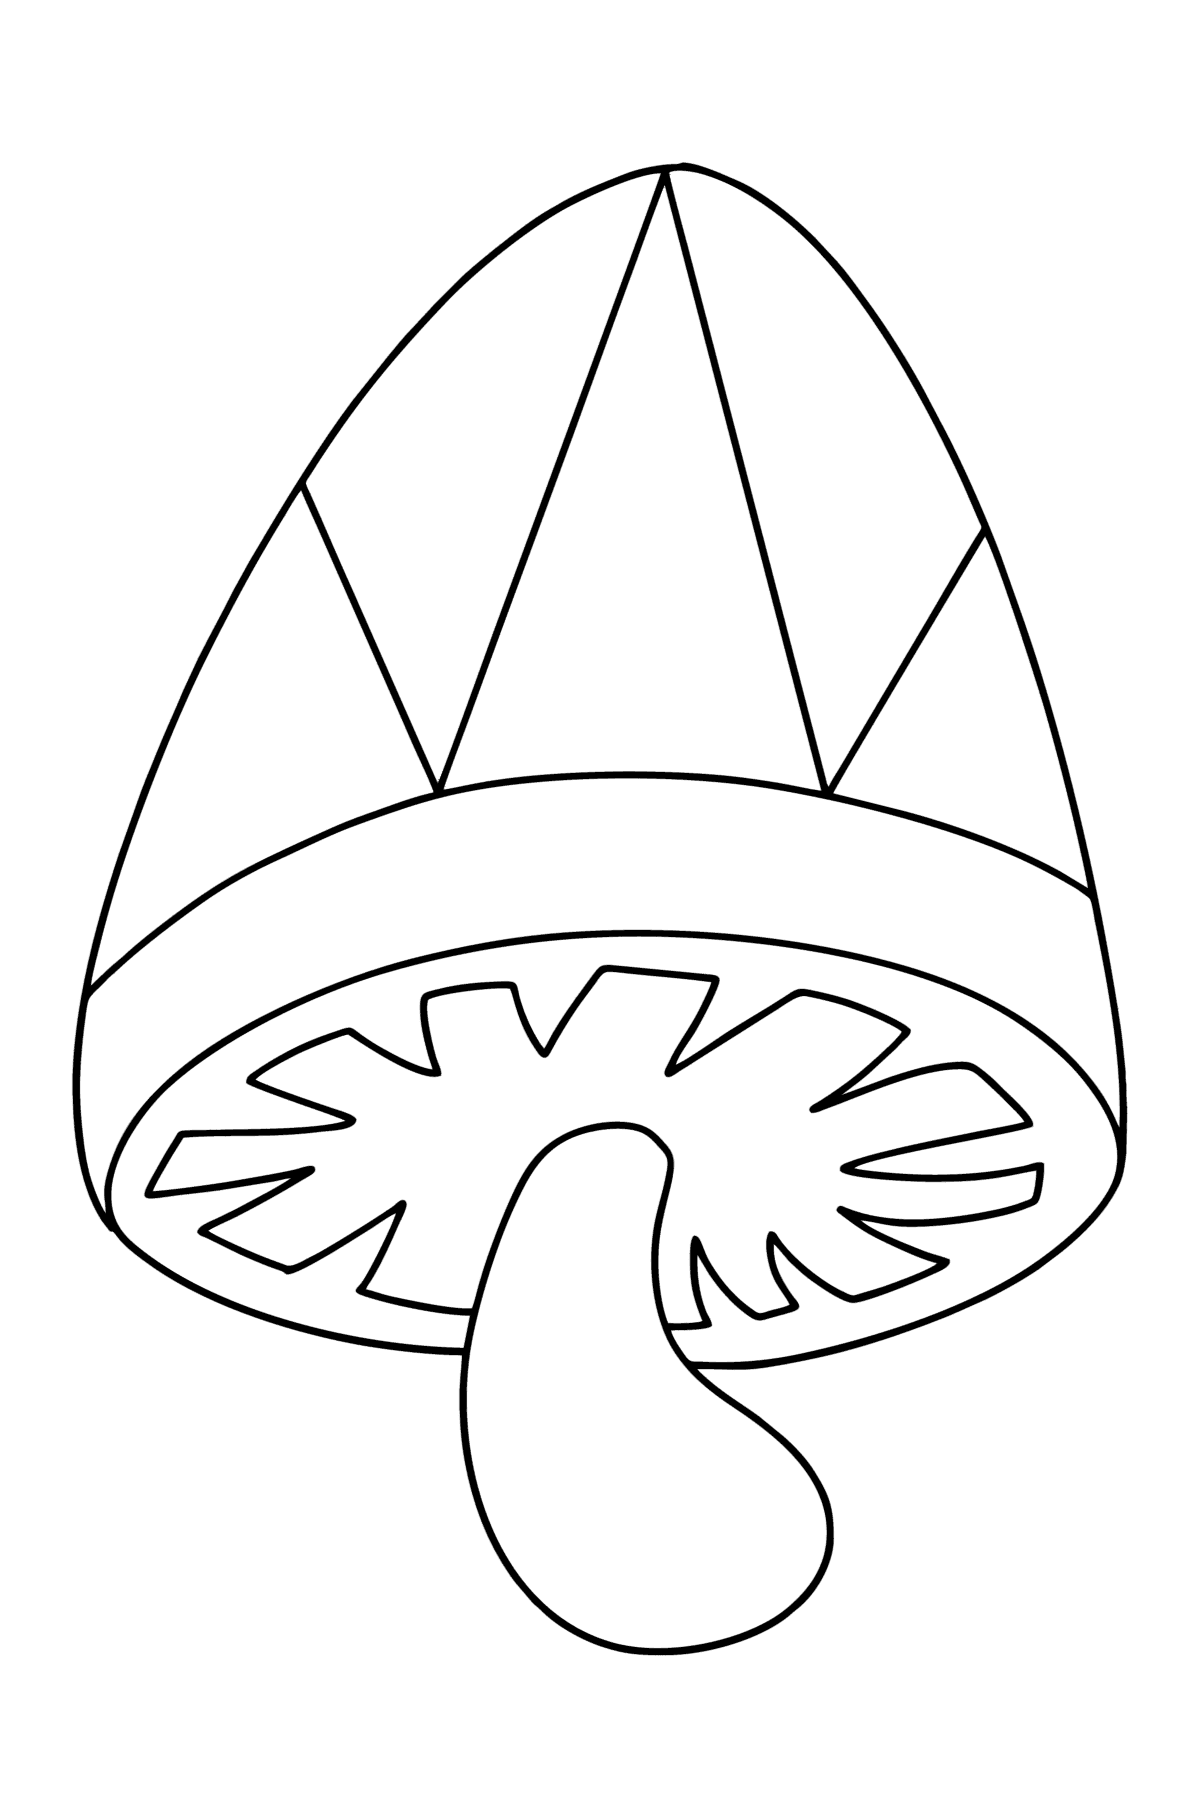 Desenho para colorir de cogumelo Zen simples - Imagens para Colorir para Crianças